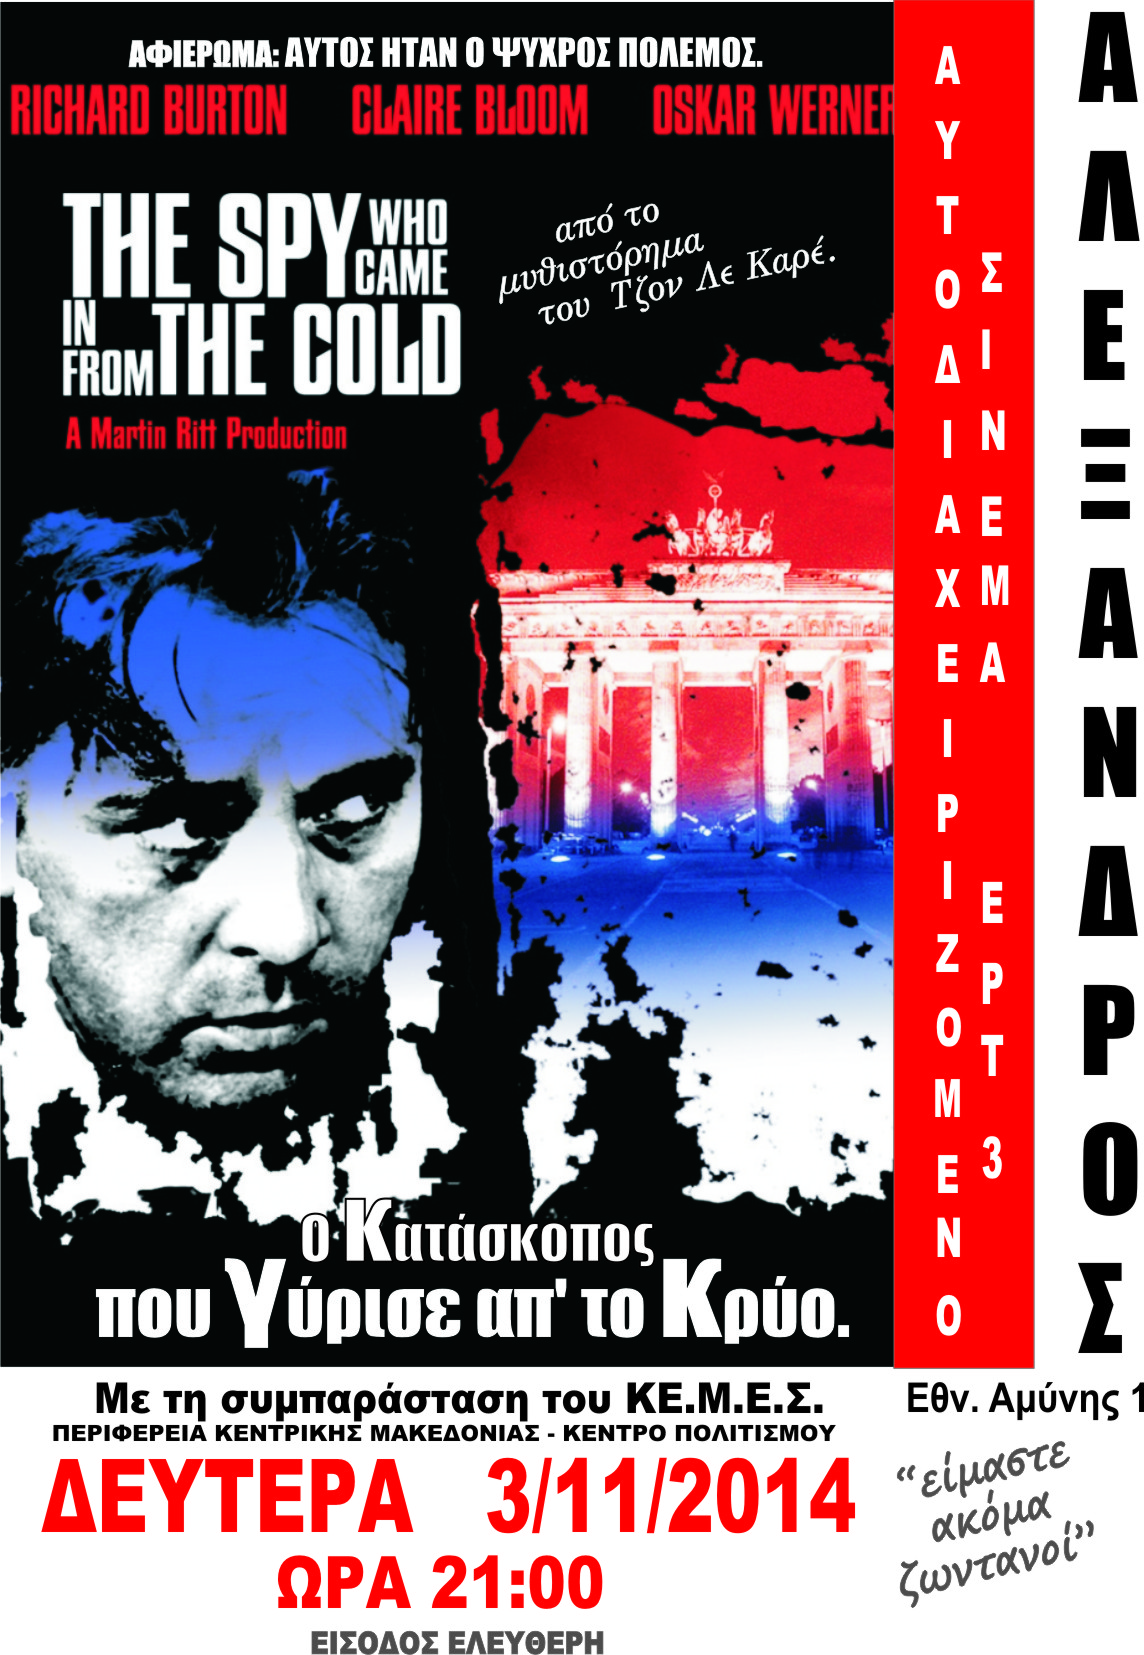 «Αυτός ήταν ο ψυχρός πόλεμος» από την Ταινιοθήκη της ΕΡΤ-3